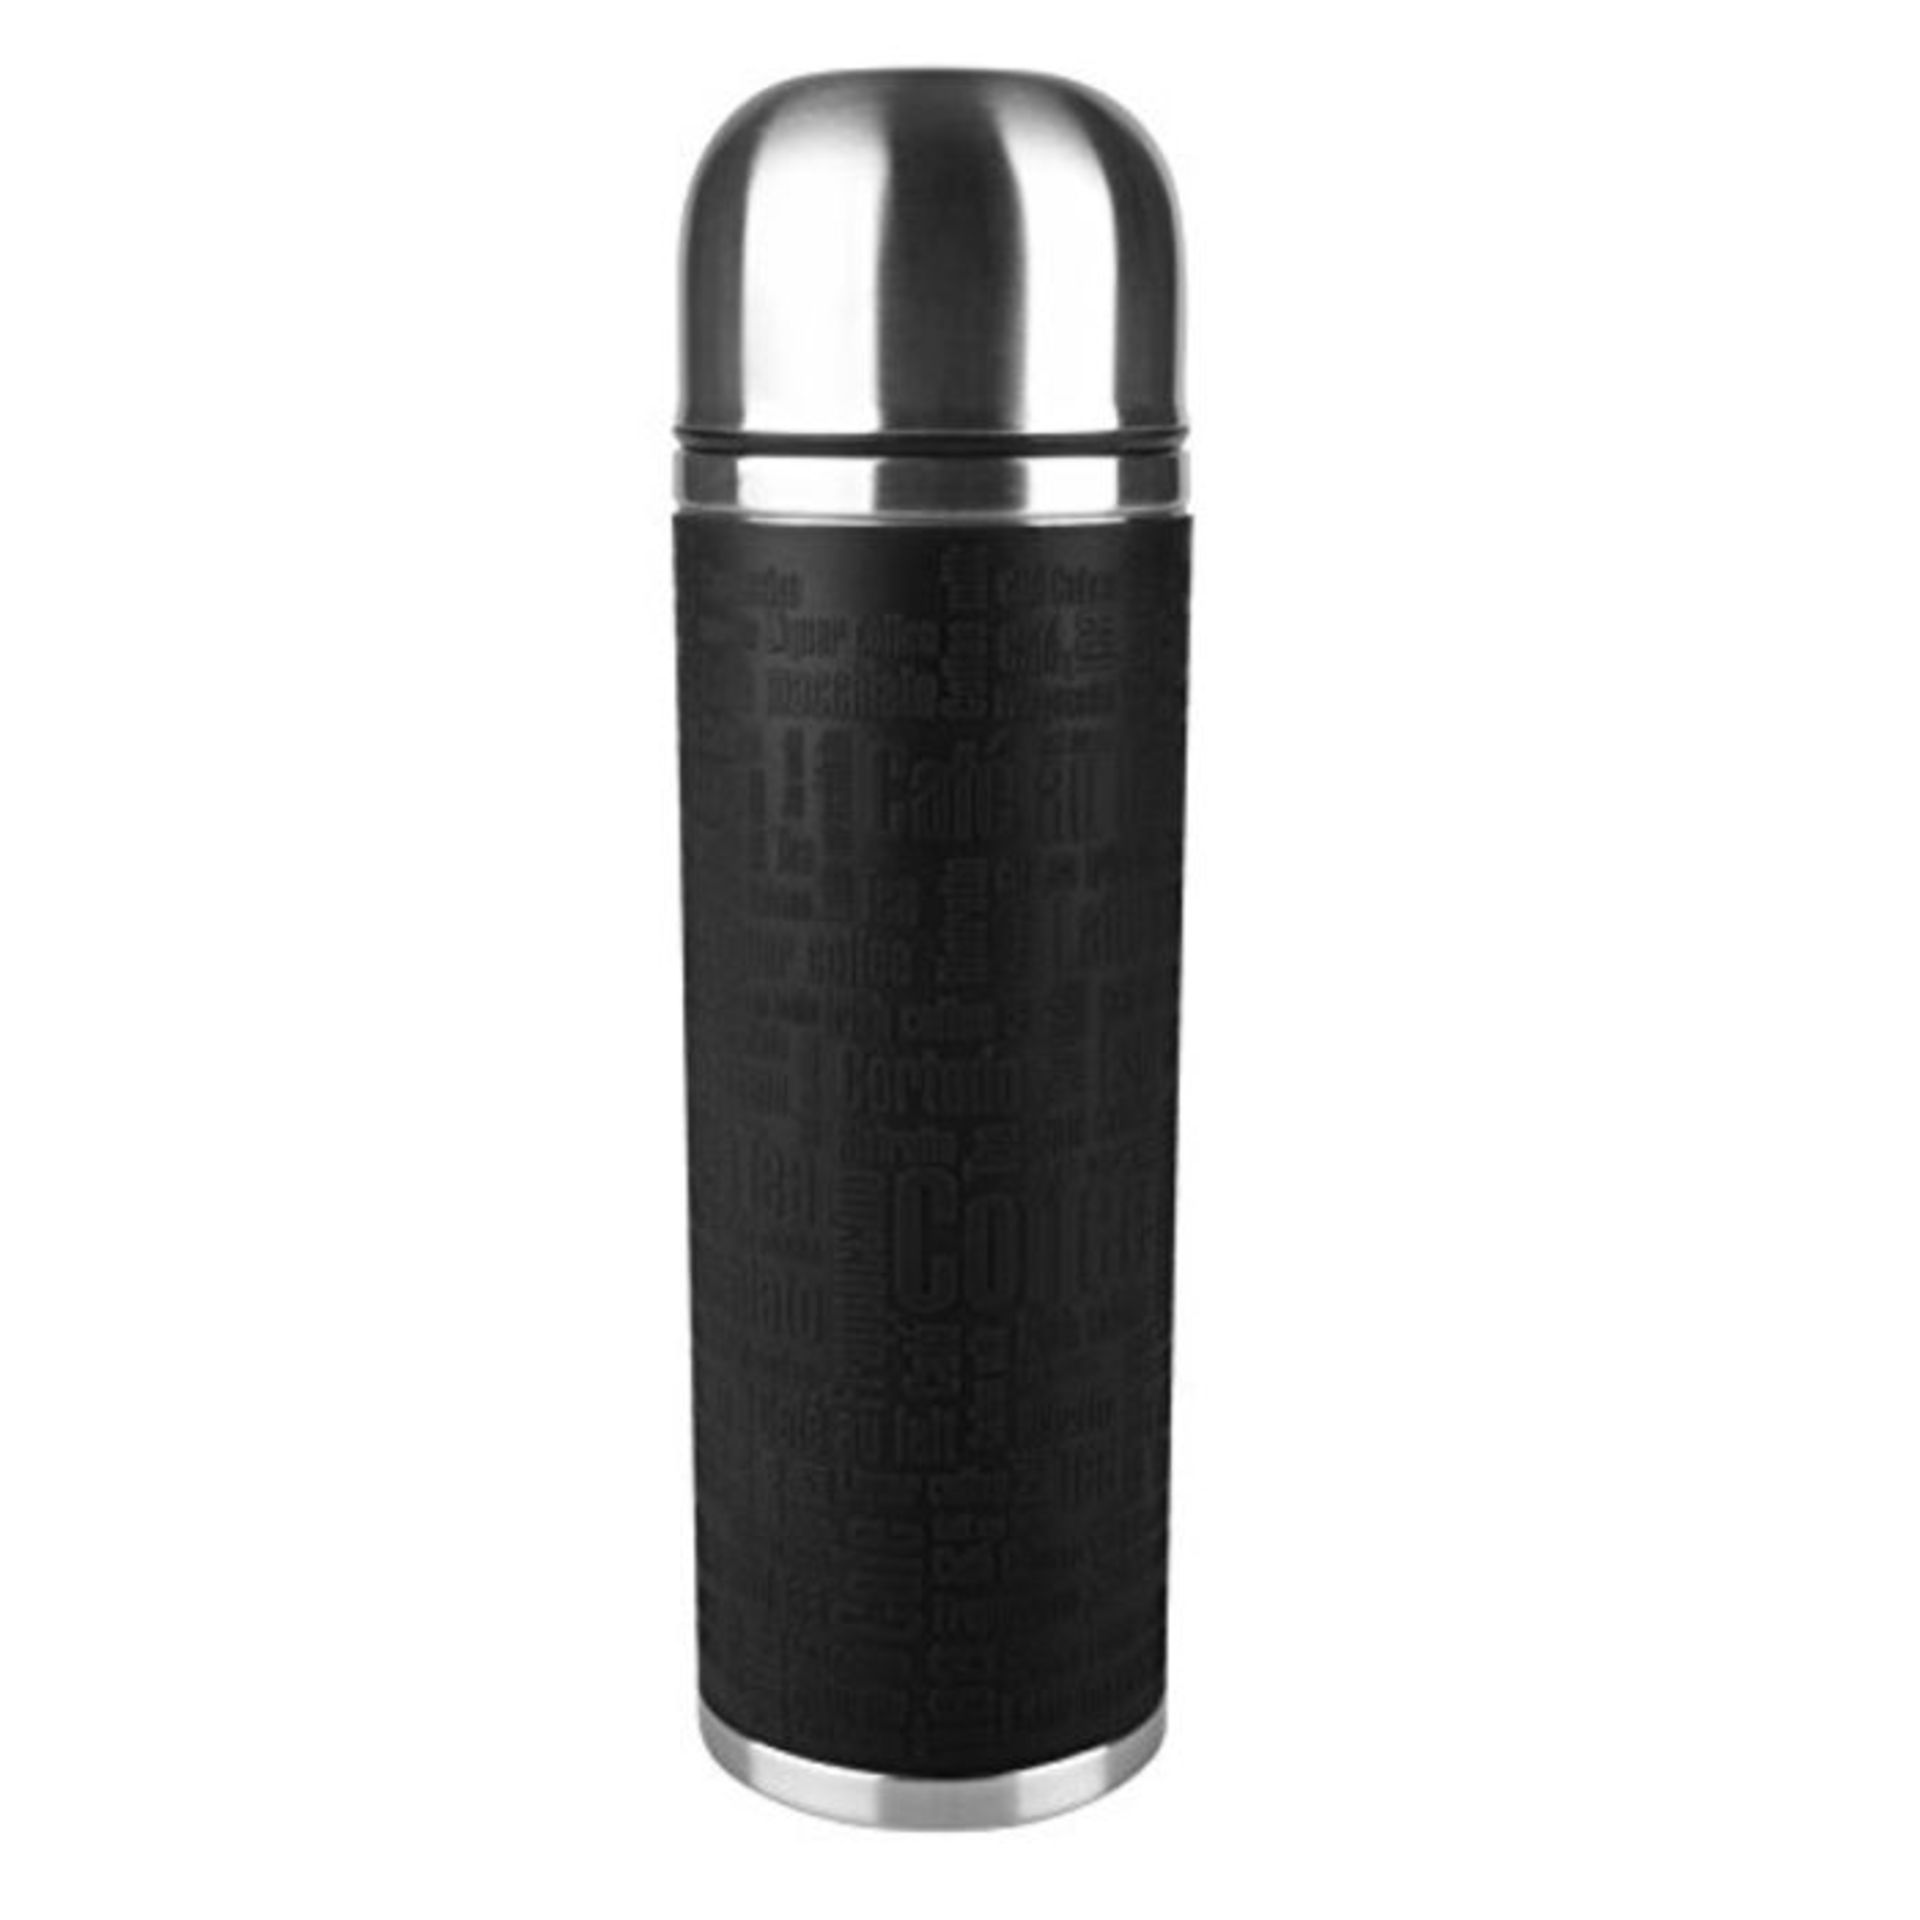 Emsa "Senator" Bottle Cooler with Cuff, Black, 1.0 Litre